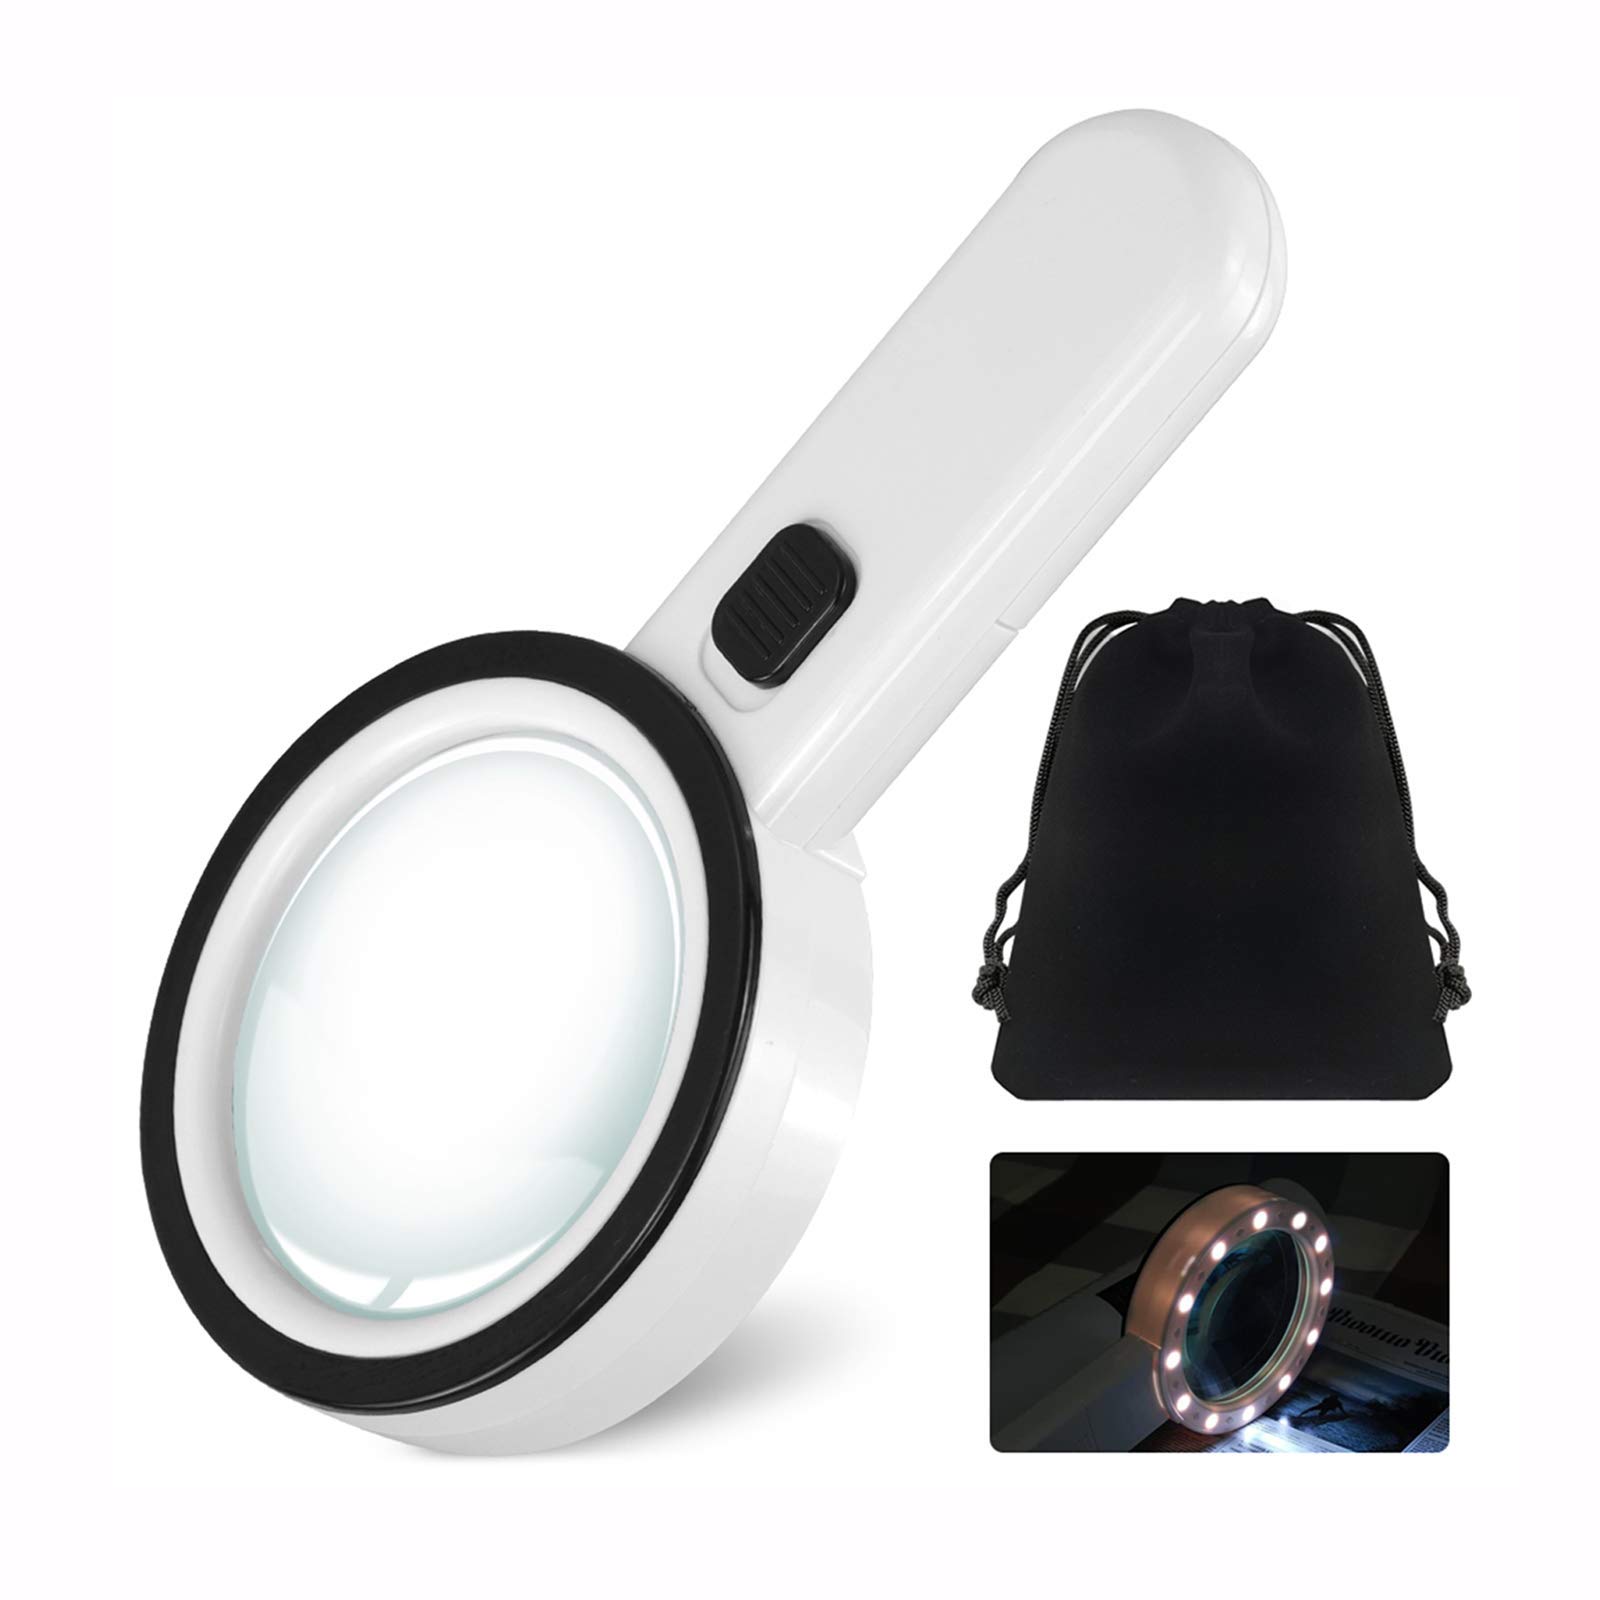 30X Handheld Magnifying Glass 12 Bright LED Light Illuminated